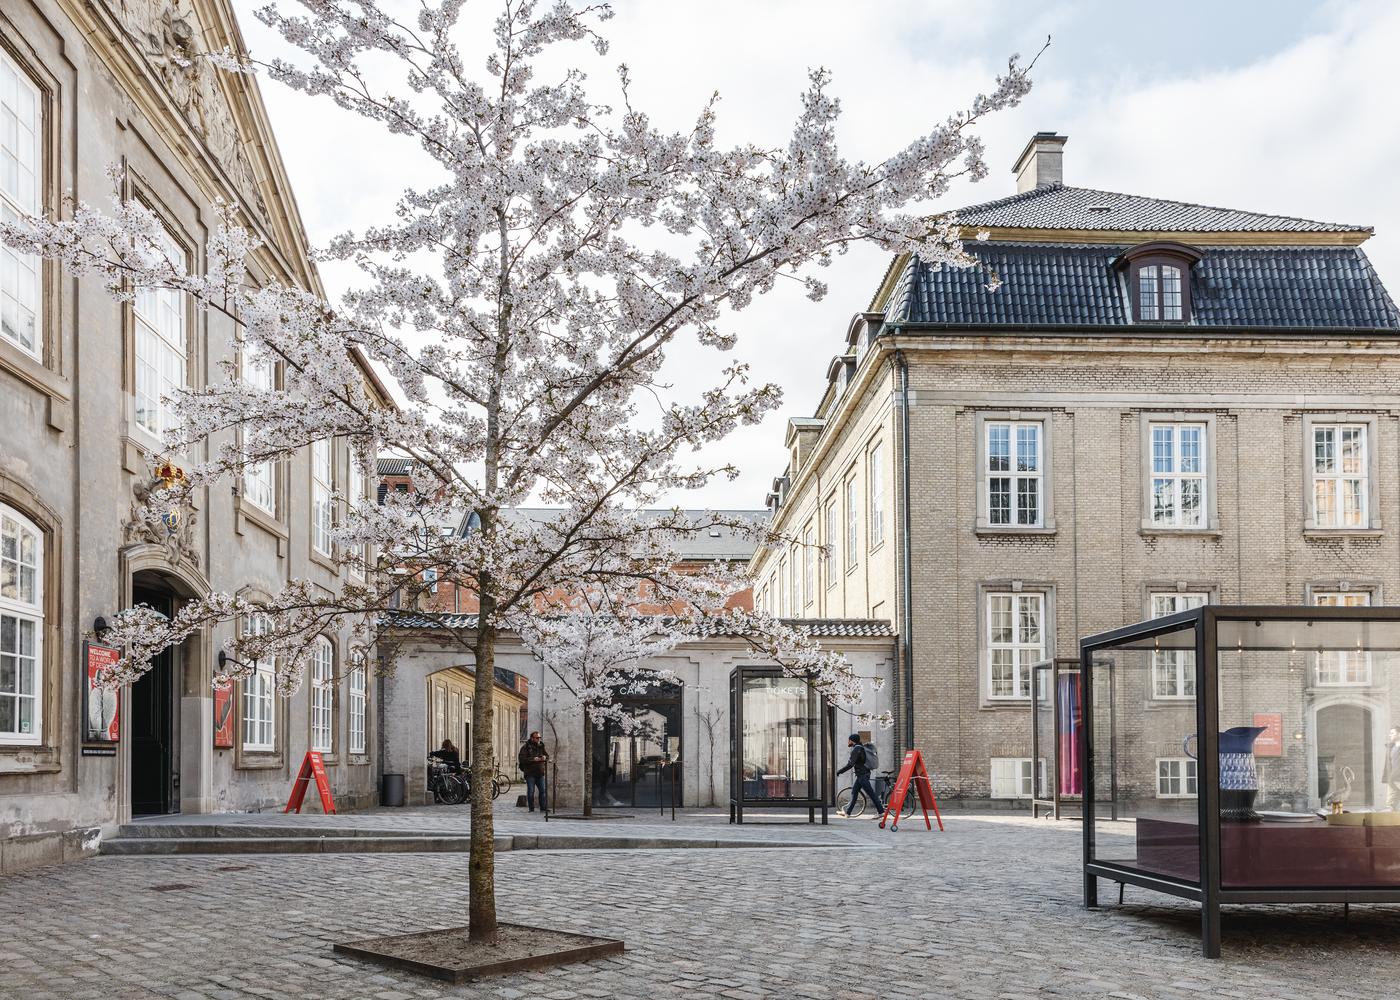 【歐洲最重要的洛可可式建築之一】丹麥設計博物館完成翻修 鼓勵體驗和探索設計